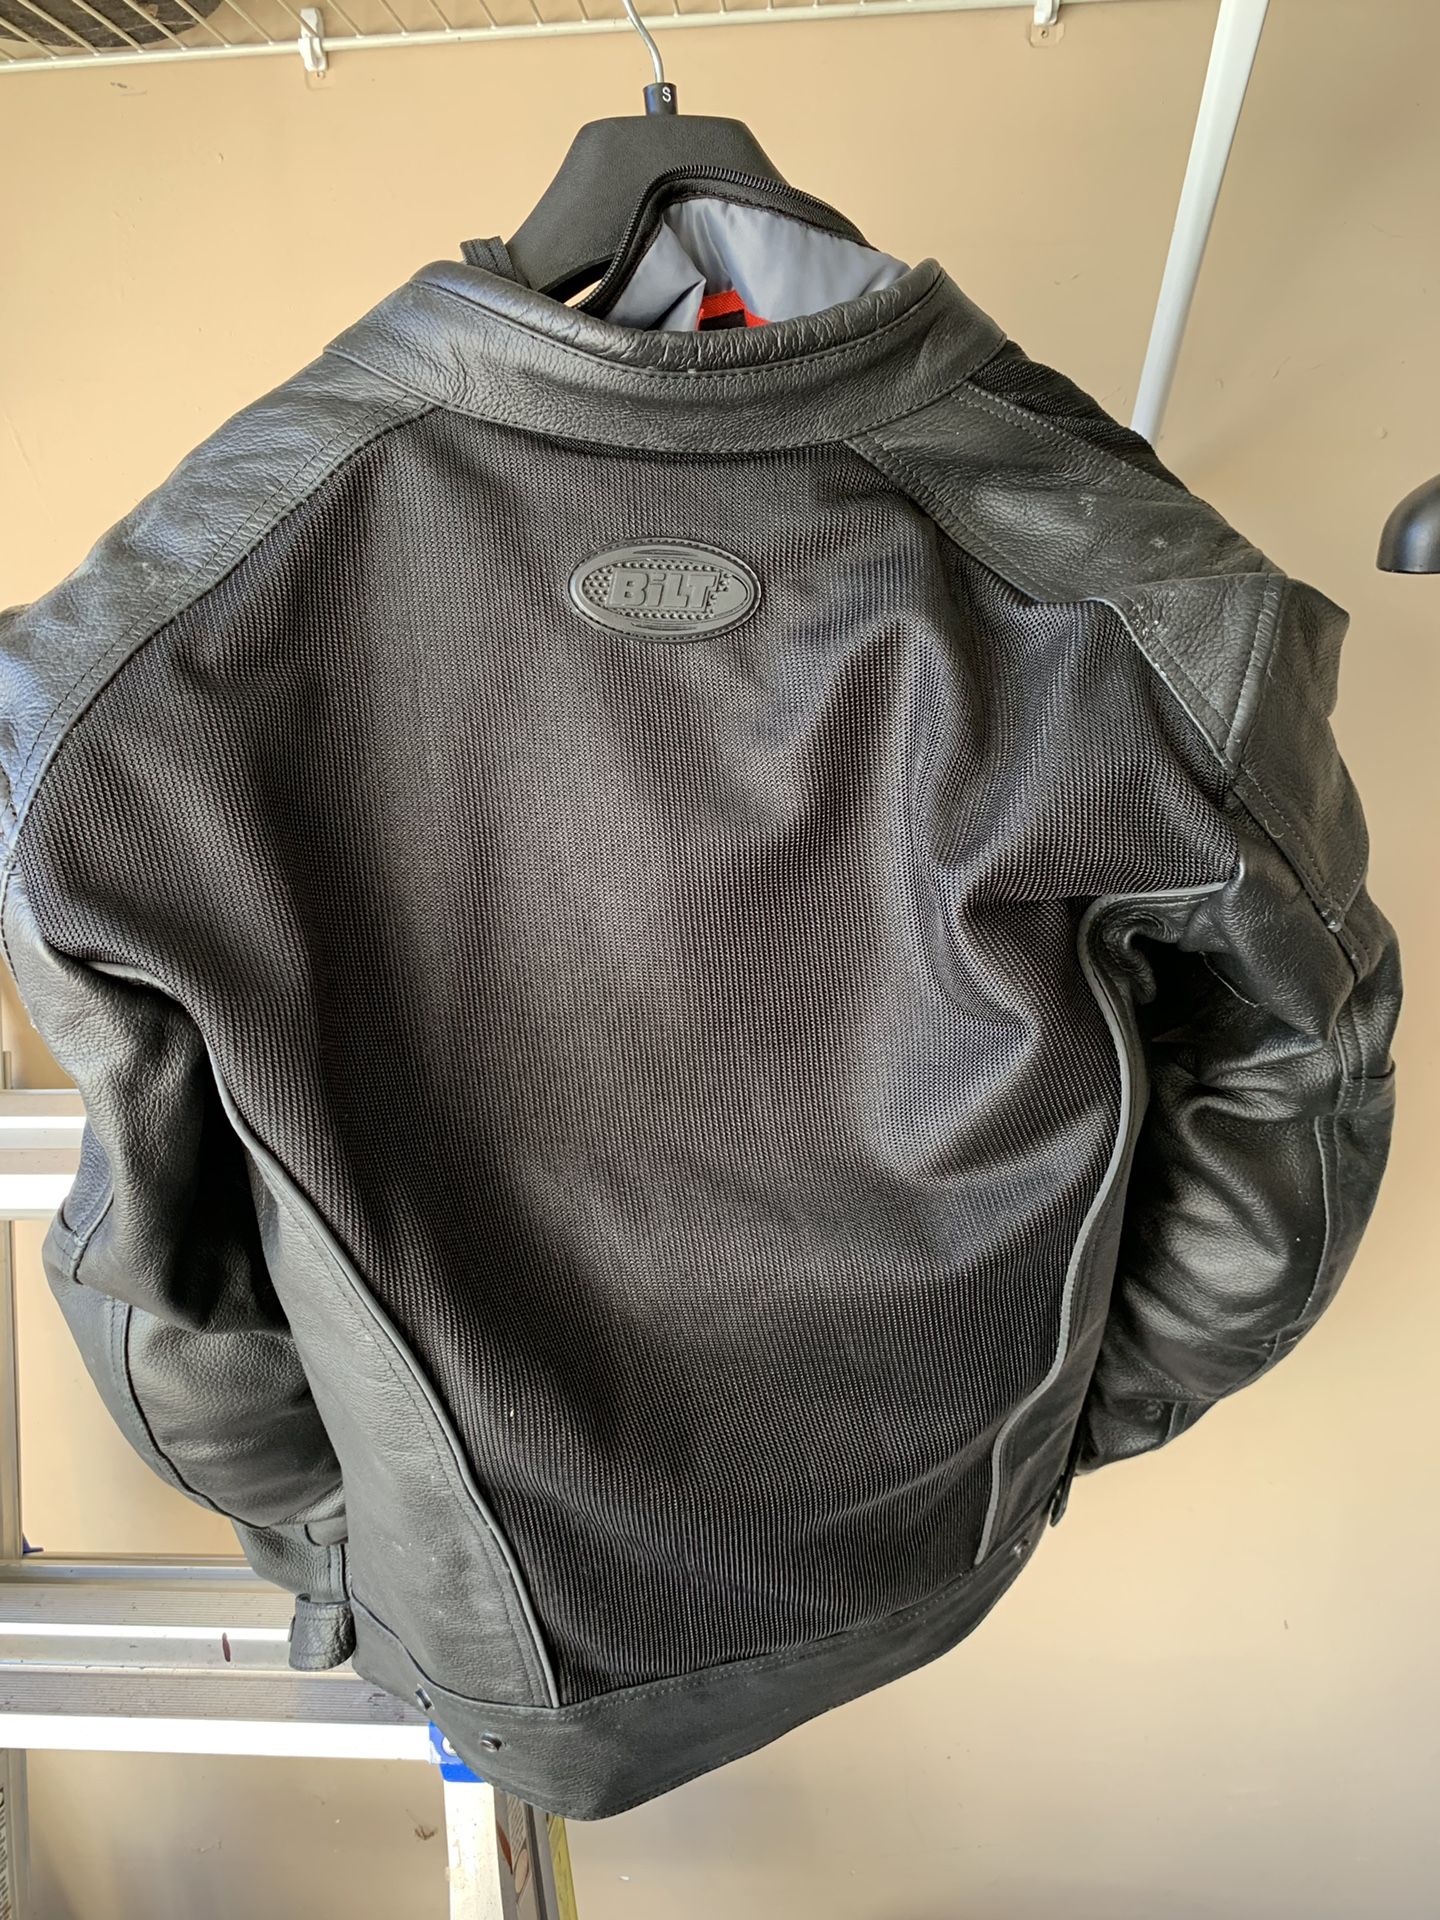 Bilt motorcycle jacket